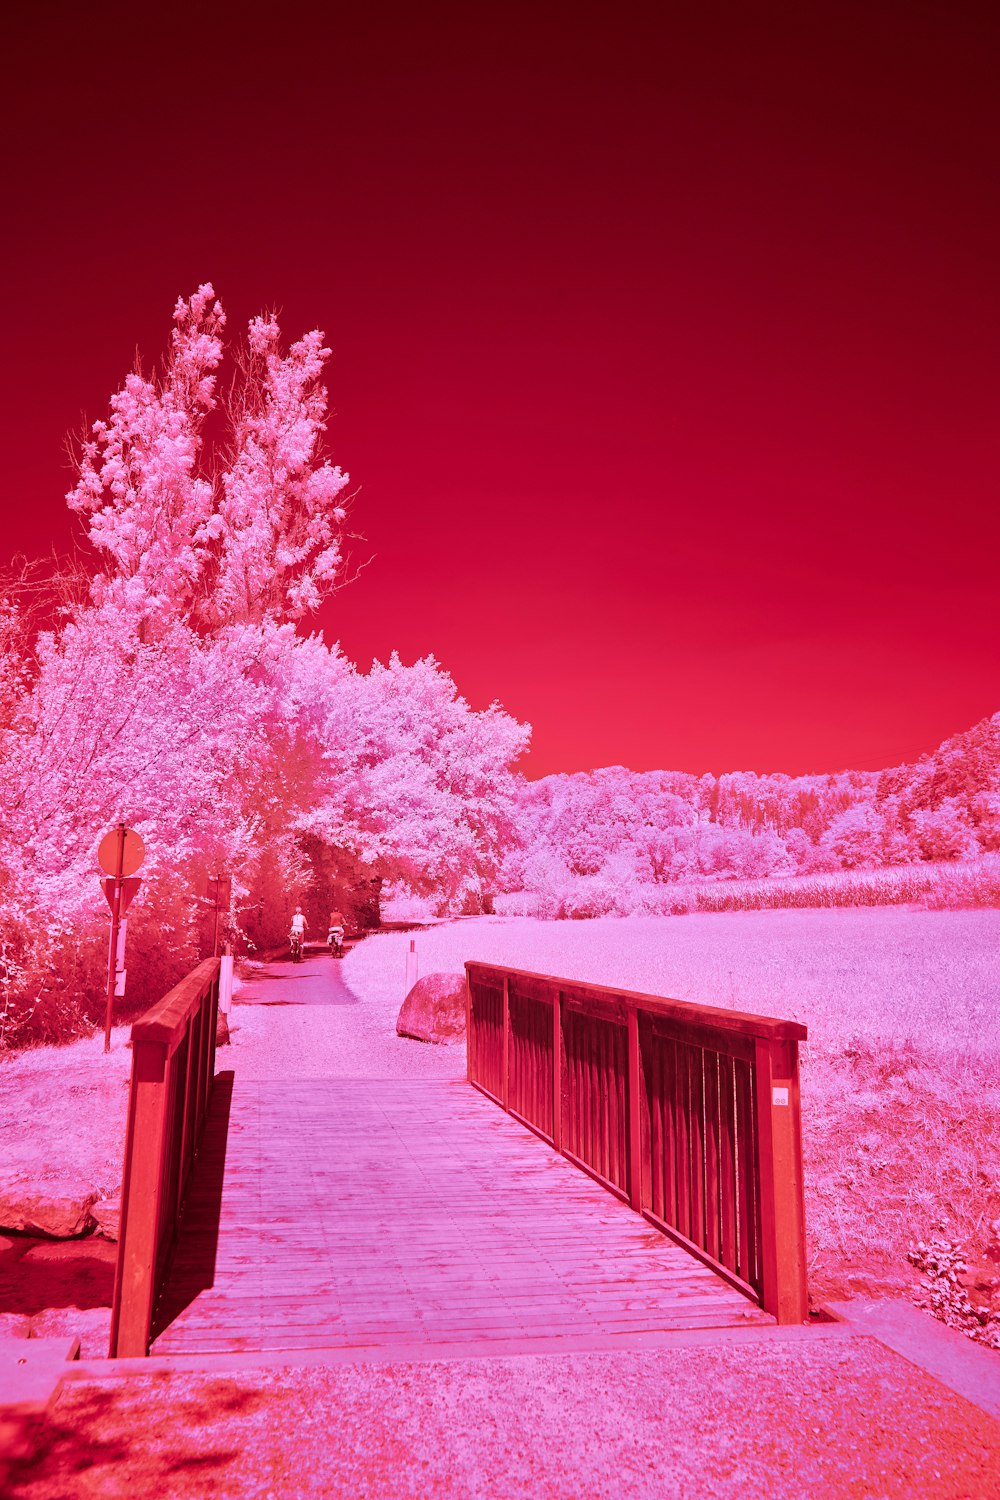 Ein rotes und rosafarbenes Infrarotbild einer Brücke